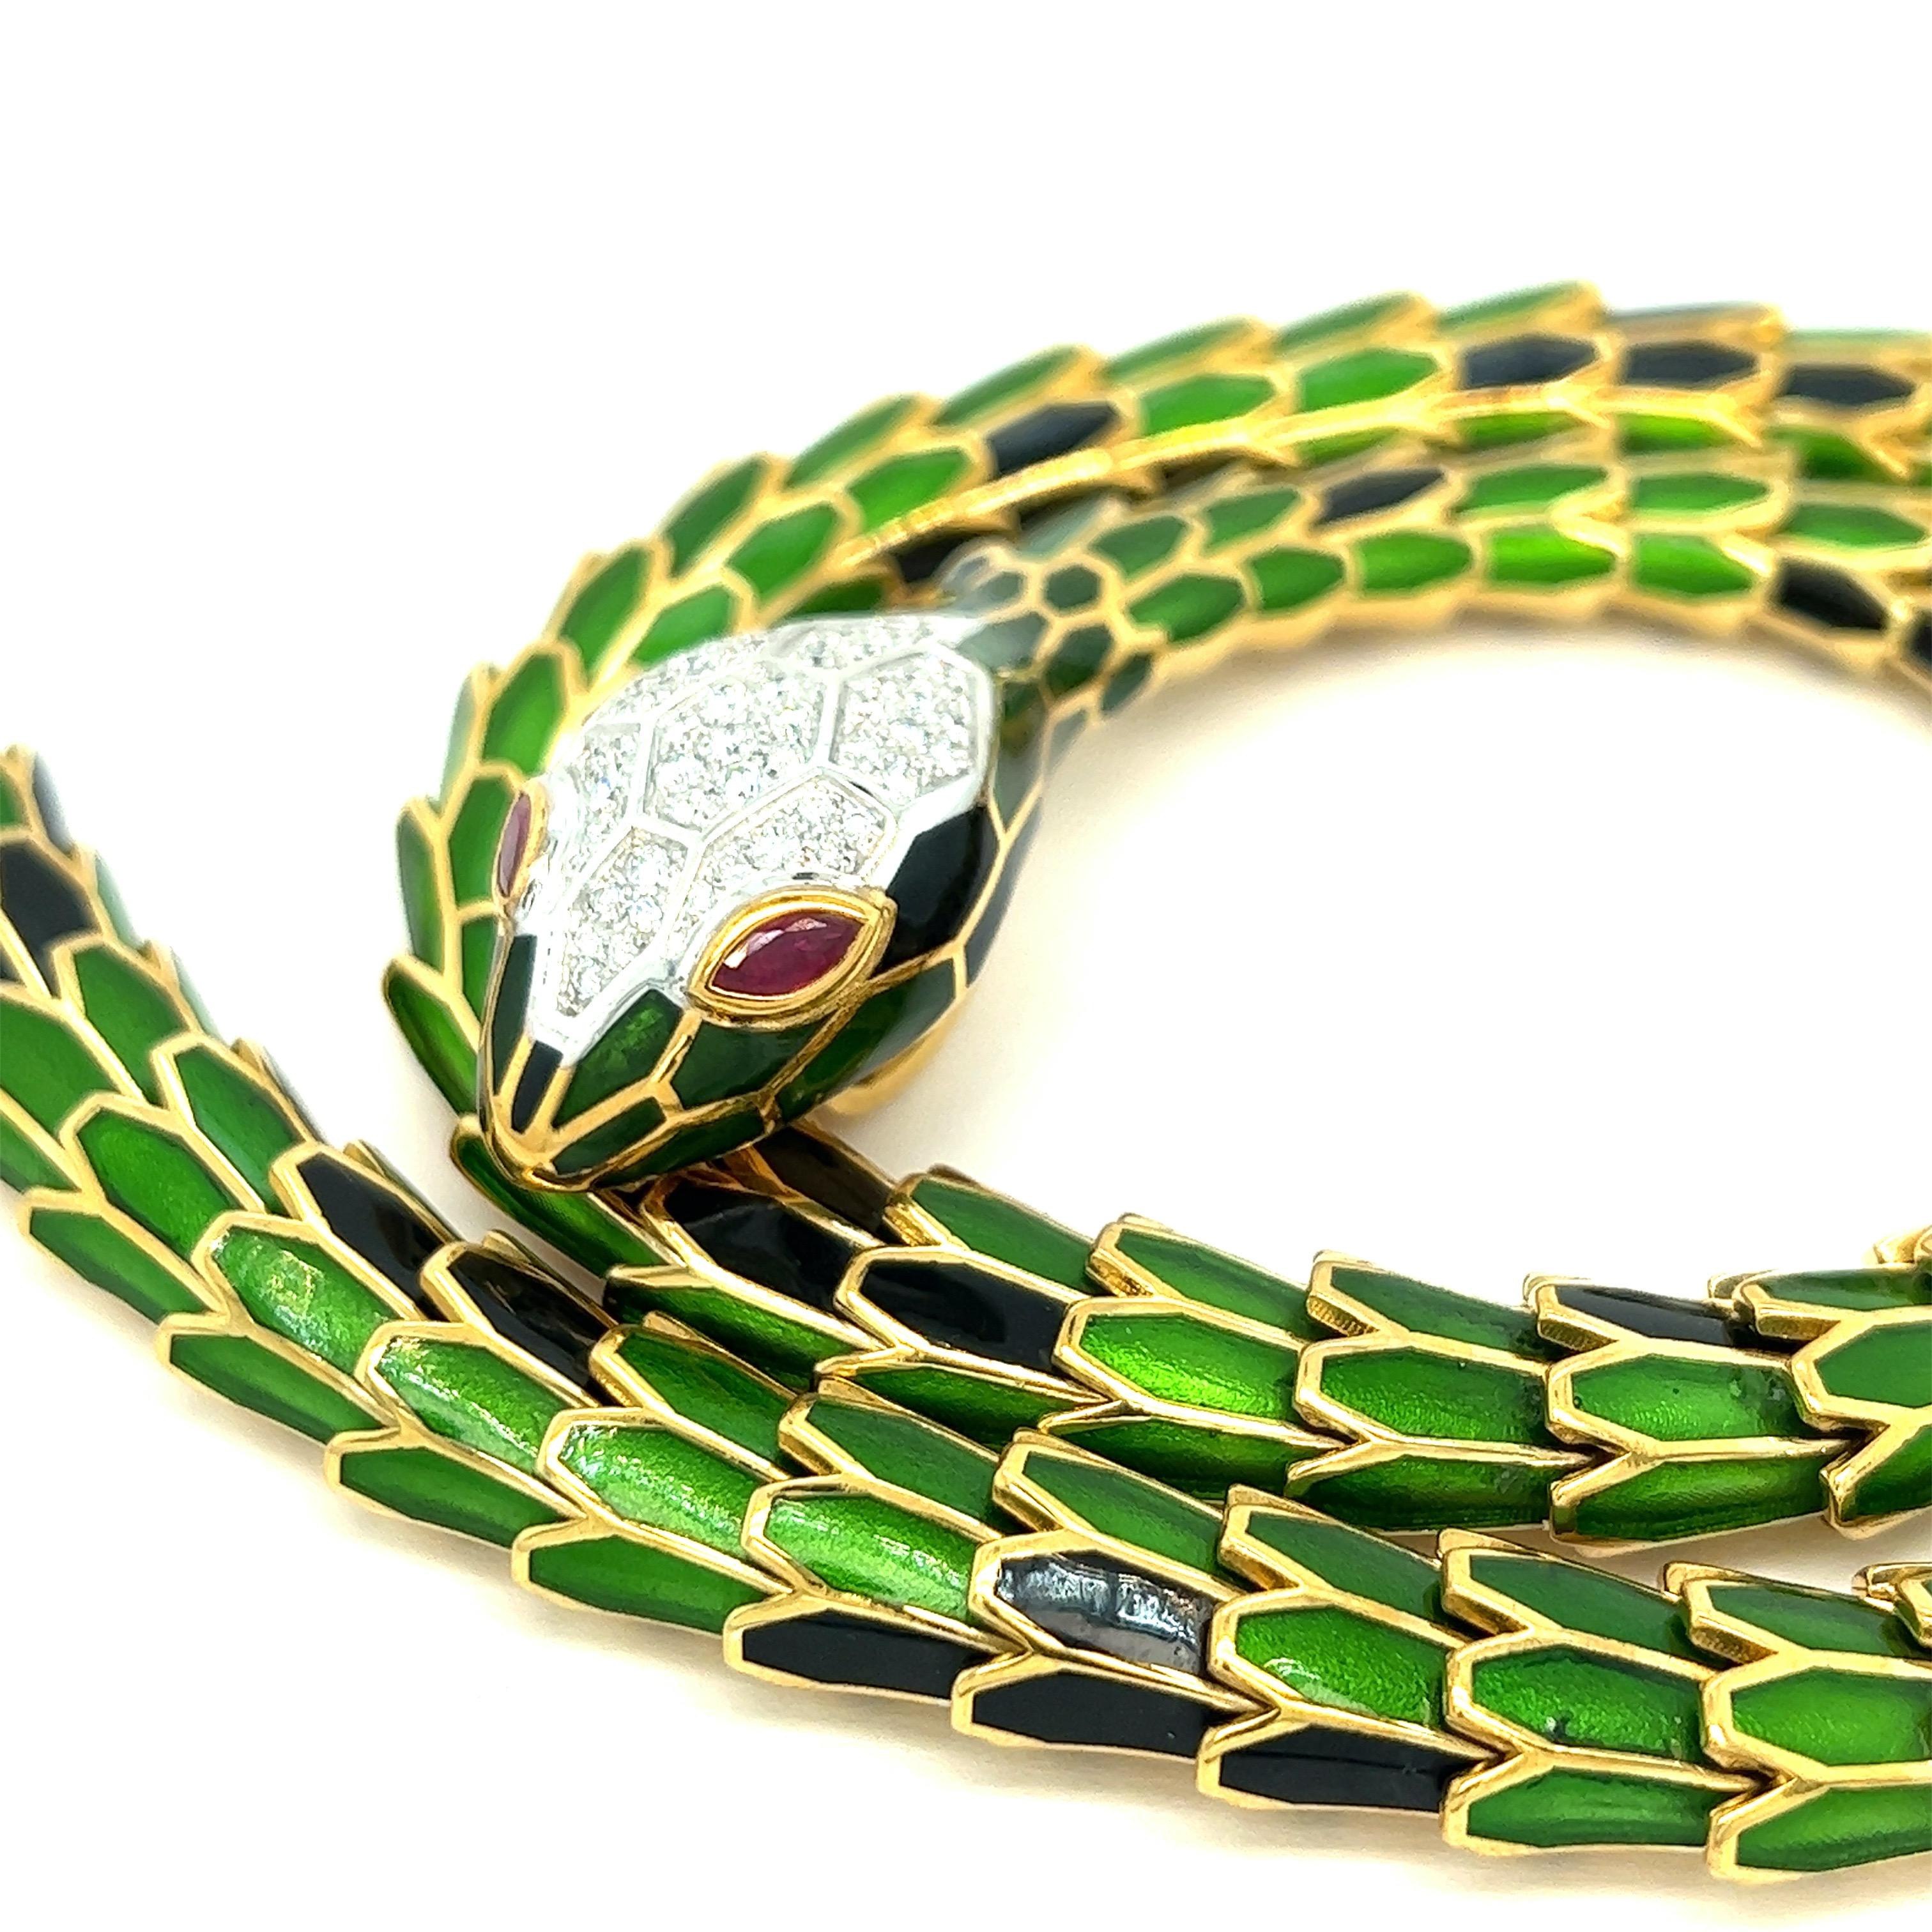 Collier serpent en émail vert et noir transparent, modèle court

Diamants ronds de 1,20 carats, rubis de forme marquise de 0,56 carat, or blanc 18 carats, argent avec un ton d'or jaune ; marqué 750, 925, D. 1,20, R. 0,56, N007YM09MBK-0095

Taille :